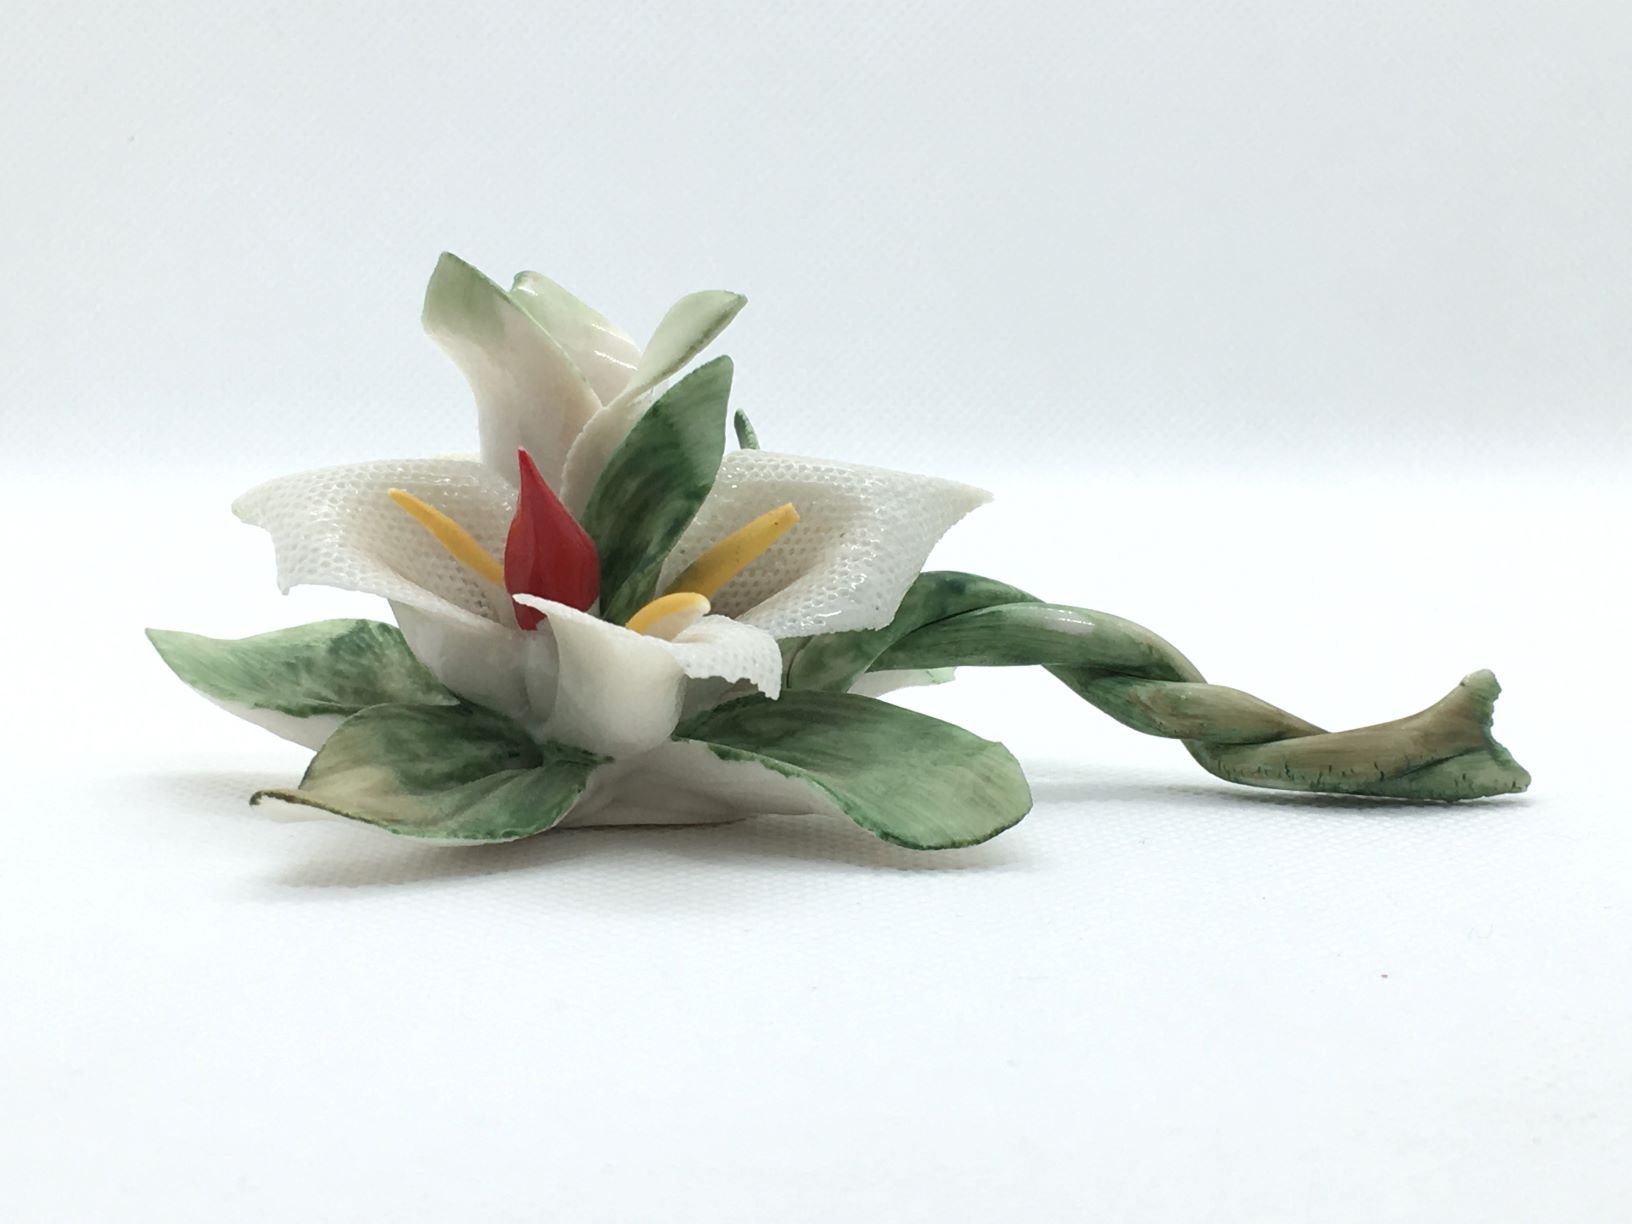 Tralcio portacandelina in ceramica di Capodimonte, fatto e decorato a mano. Firmato da Marta Marzotto, made in Italy. Dimensioni: cm 11 x 7 x 4,5 h